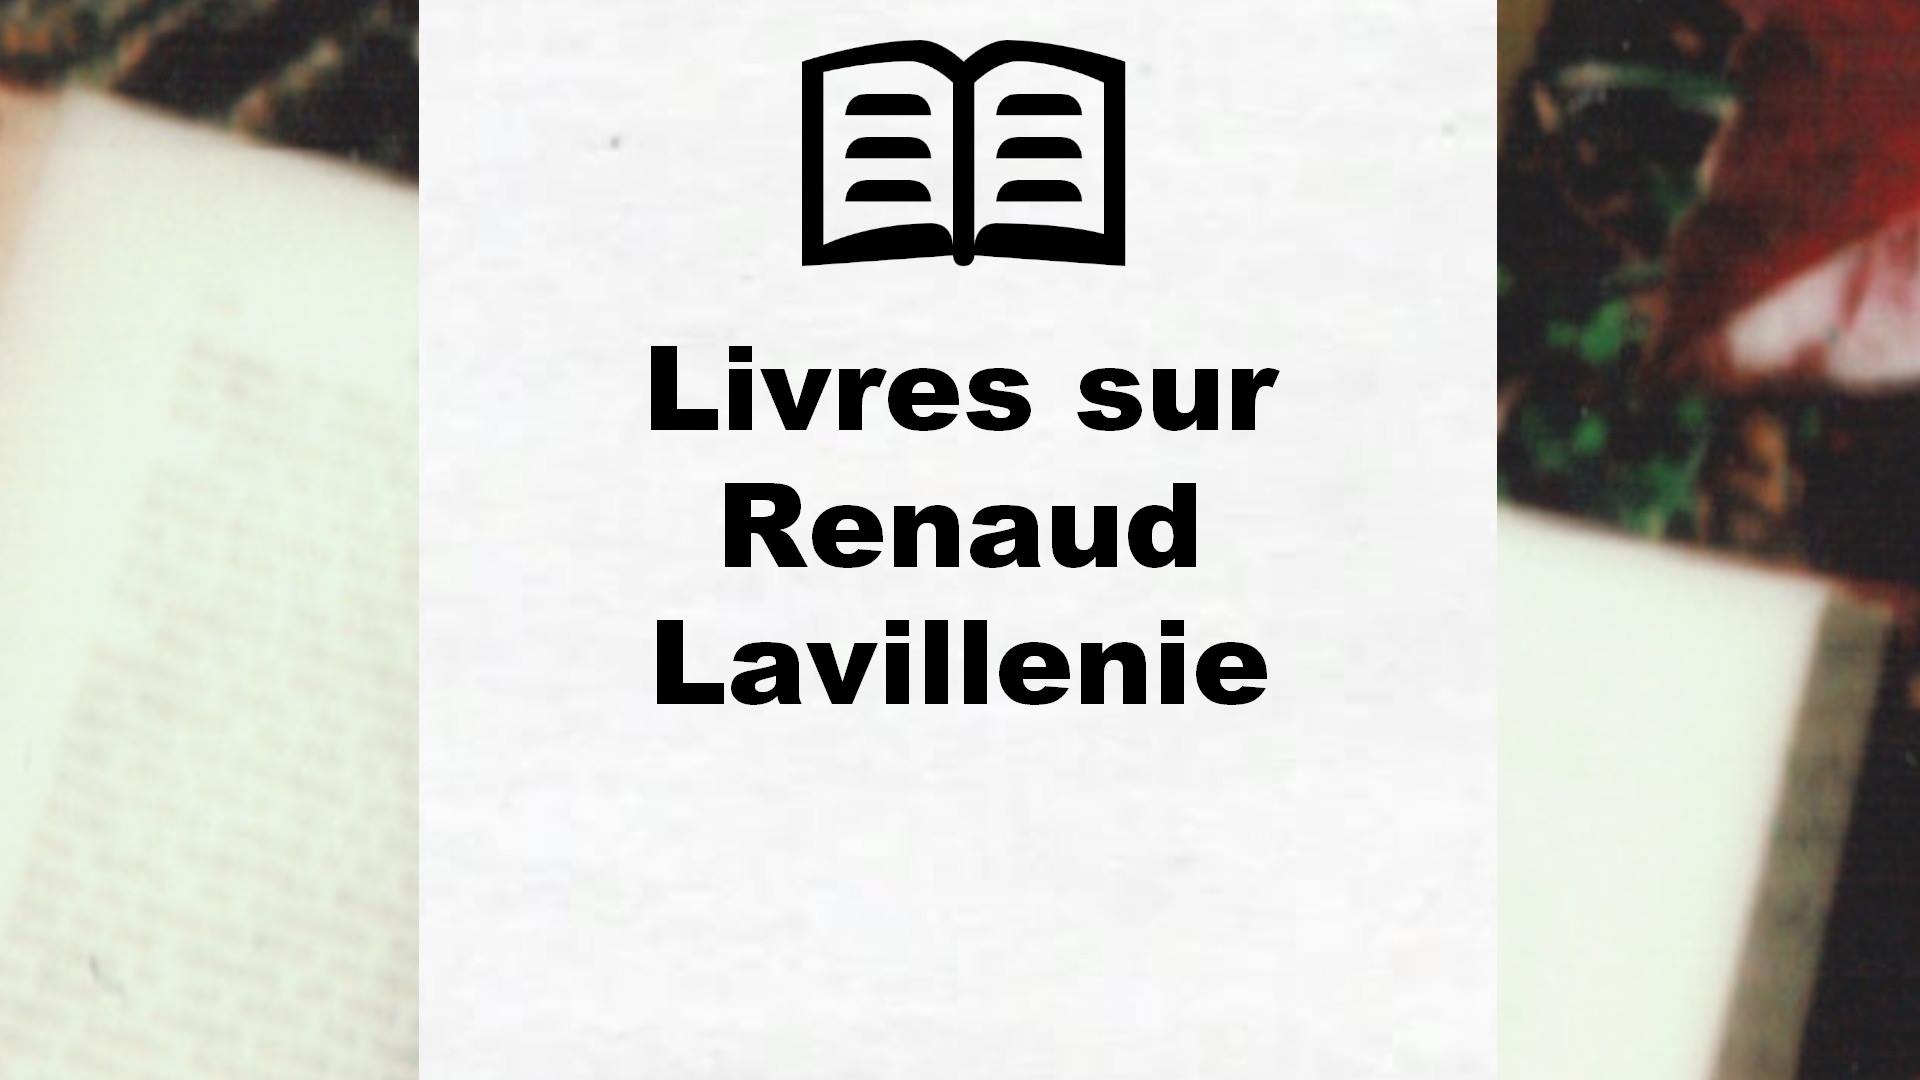 Livres sur Renaud Lavillenie